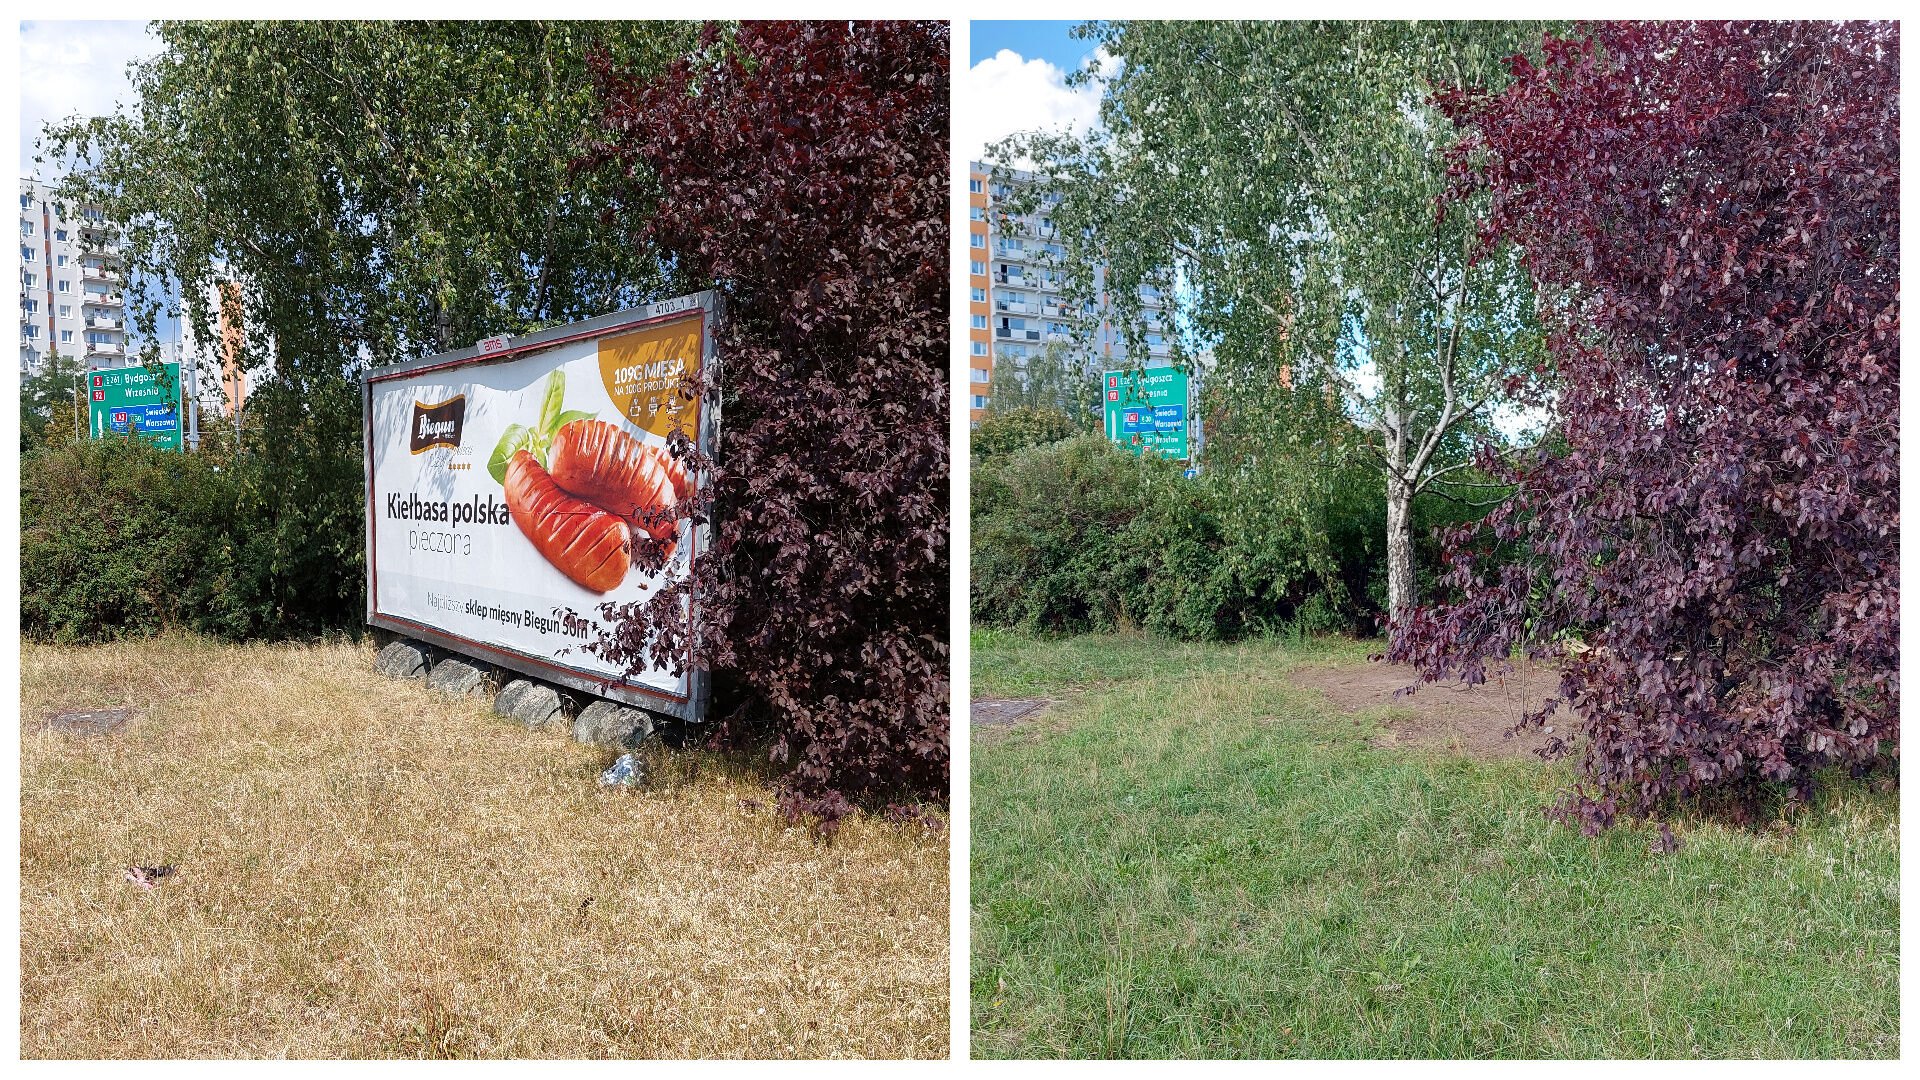 Kolaż zdjęć: po lewej stronie widać fragment trawnika, na którym stoi wielkoformatowa reklama. Po prawej widać ten sam kadr, jednak bez nośnika reklamy na trawniku.